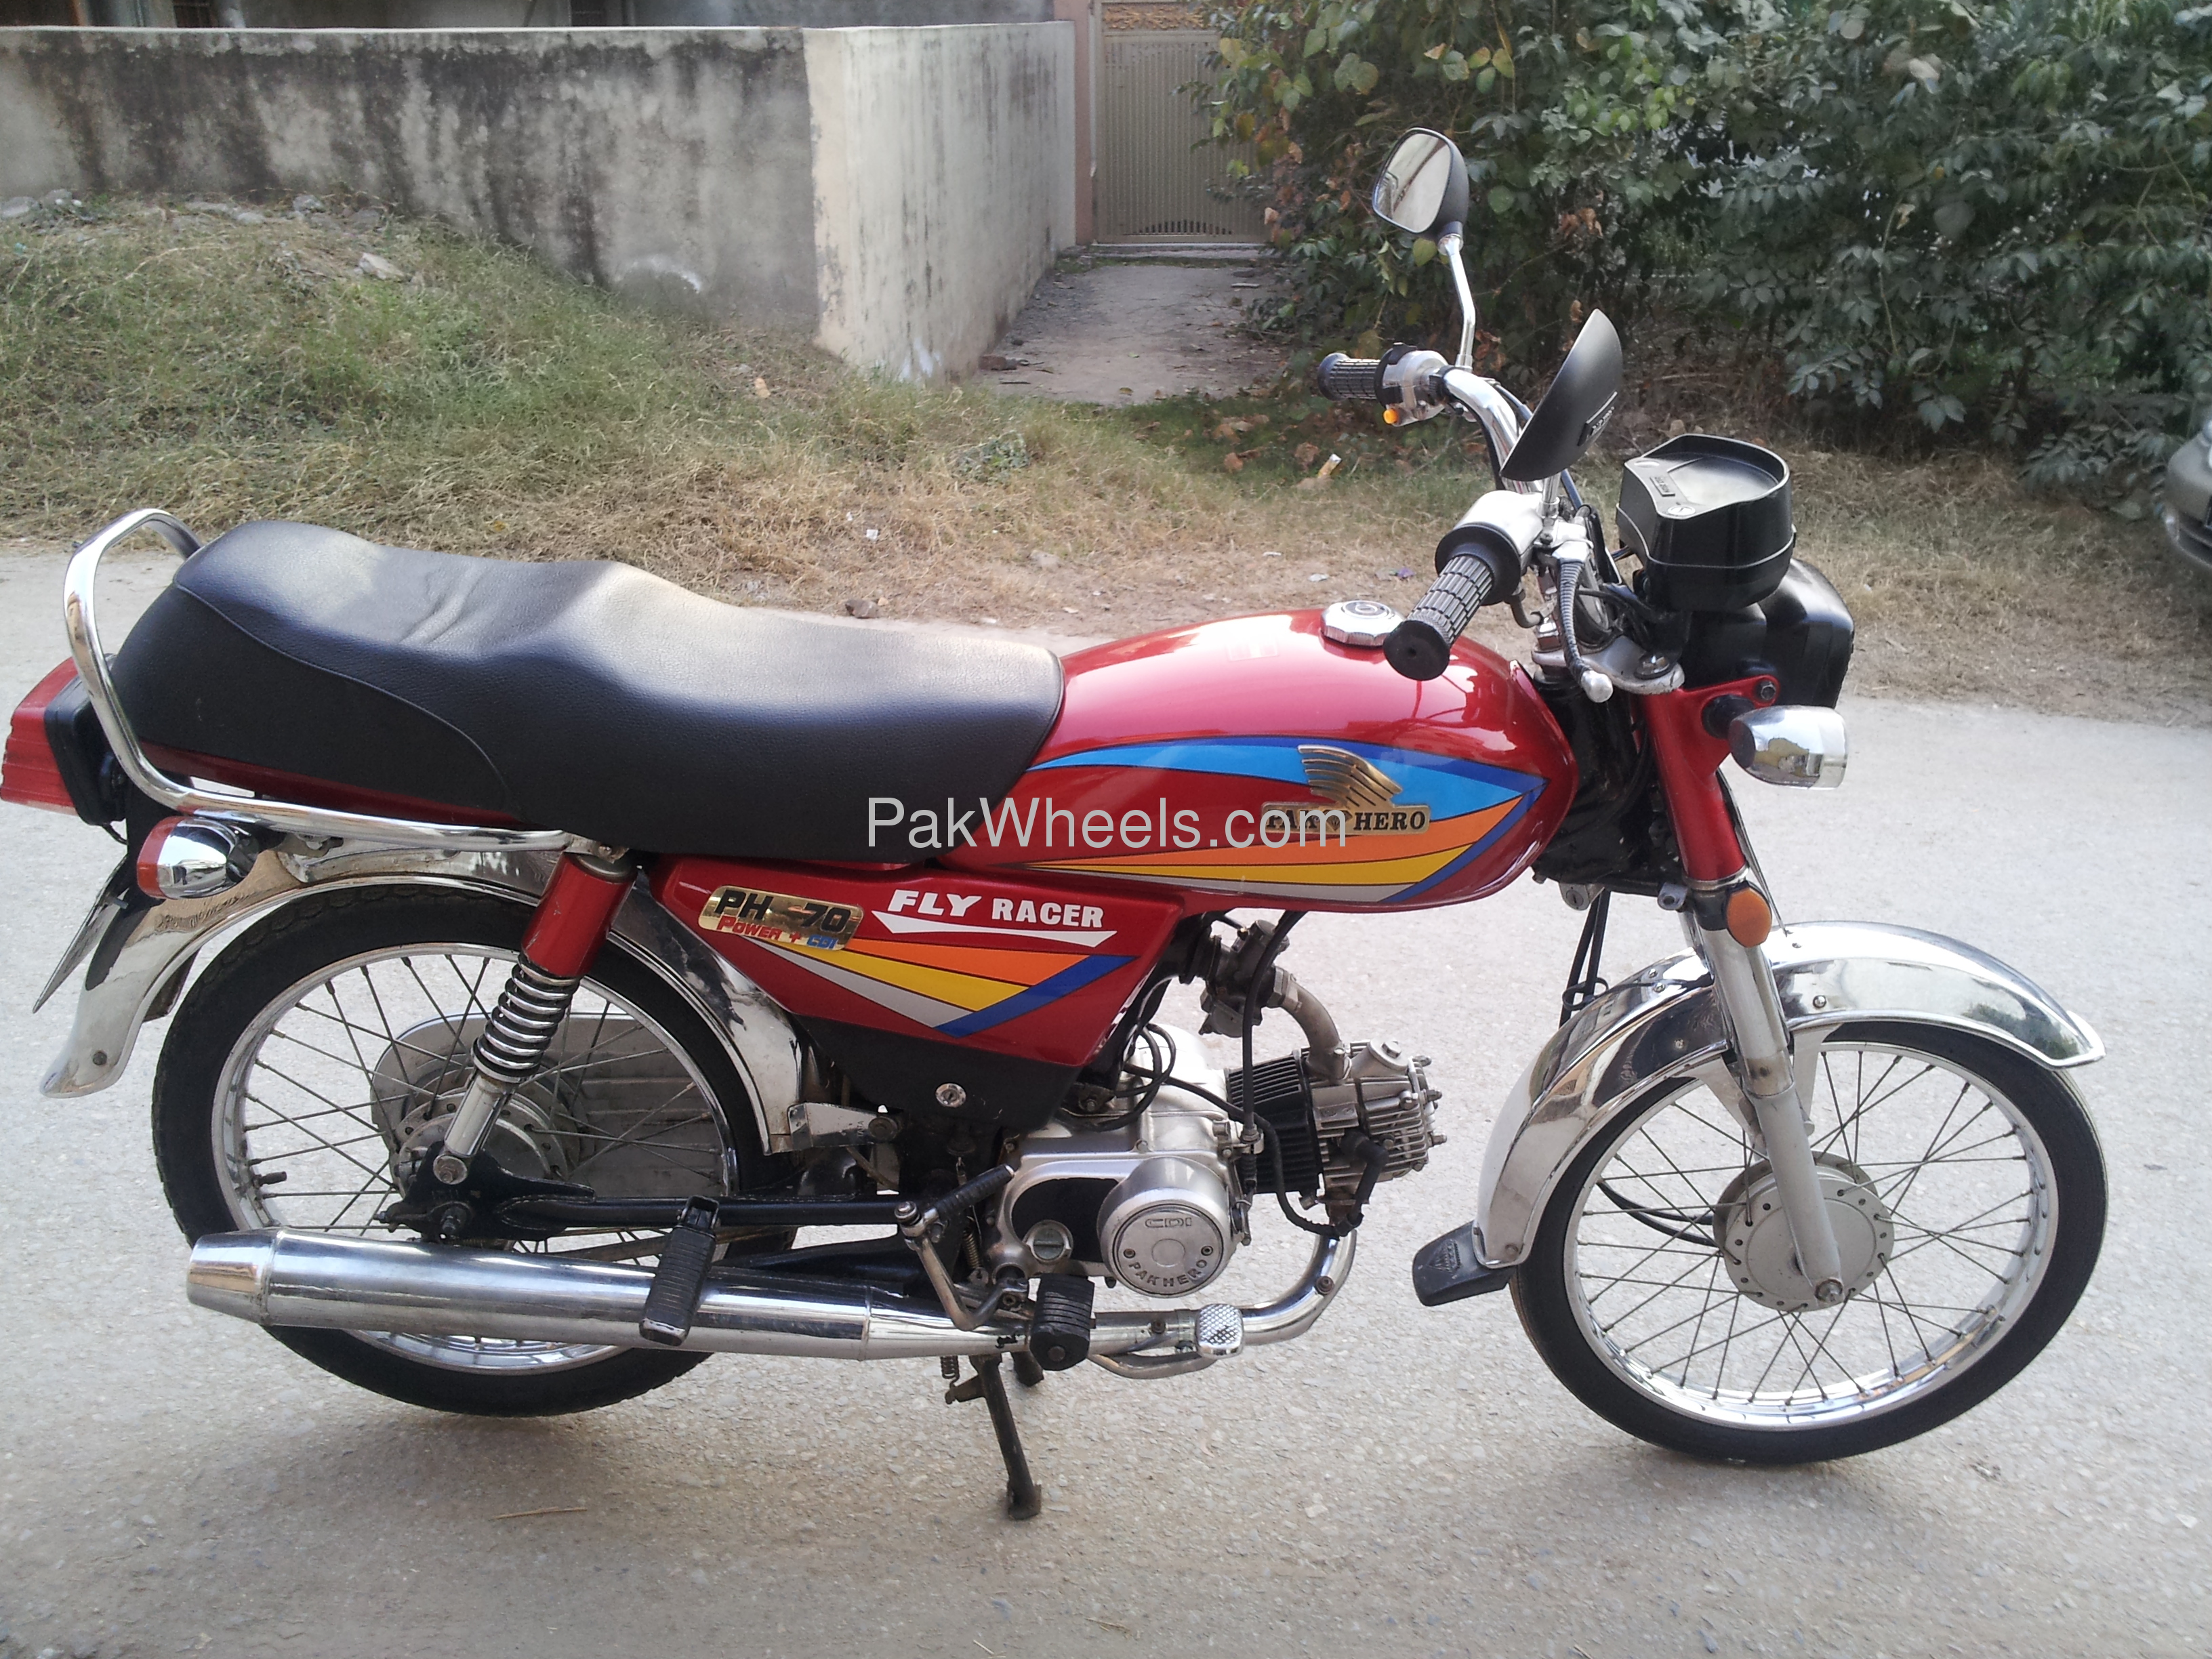 Used Pak Hero PH 70 2007 Bike for sale in Islamabad 94363 PakWheels